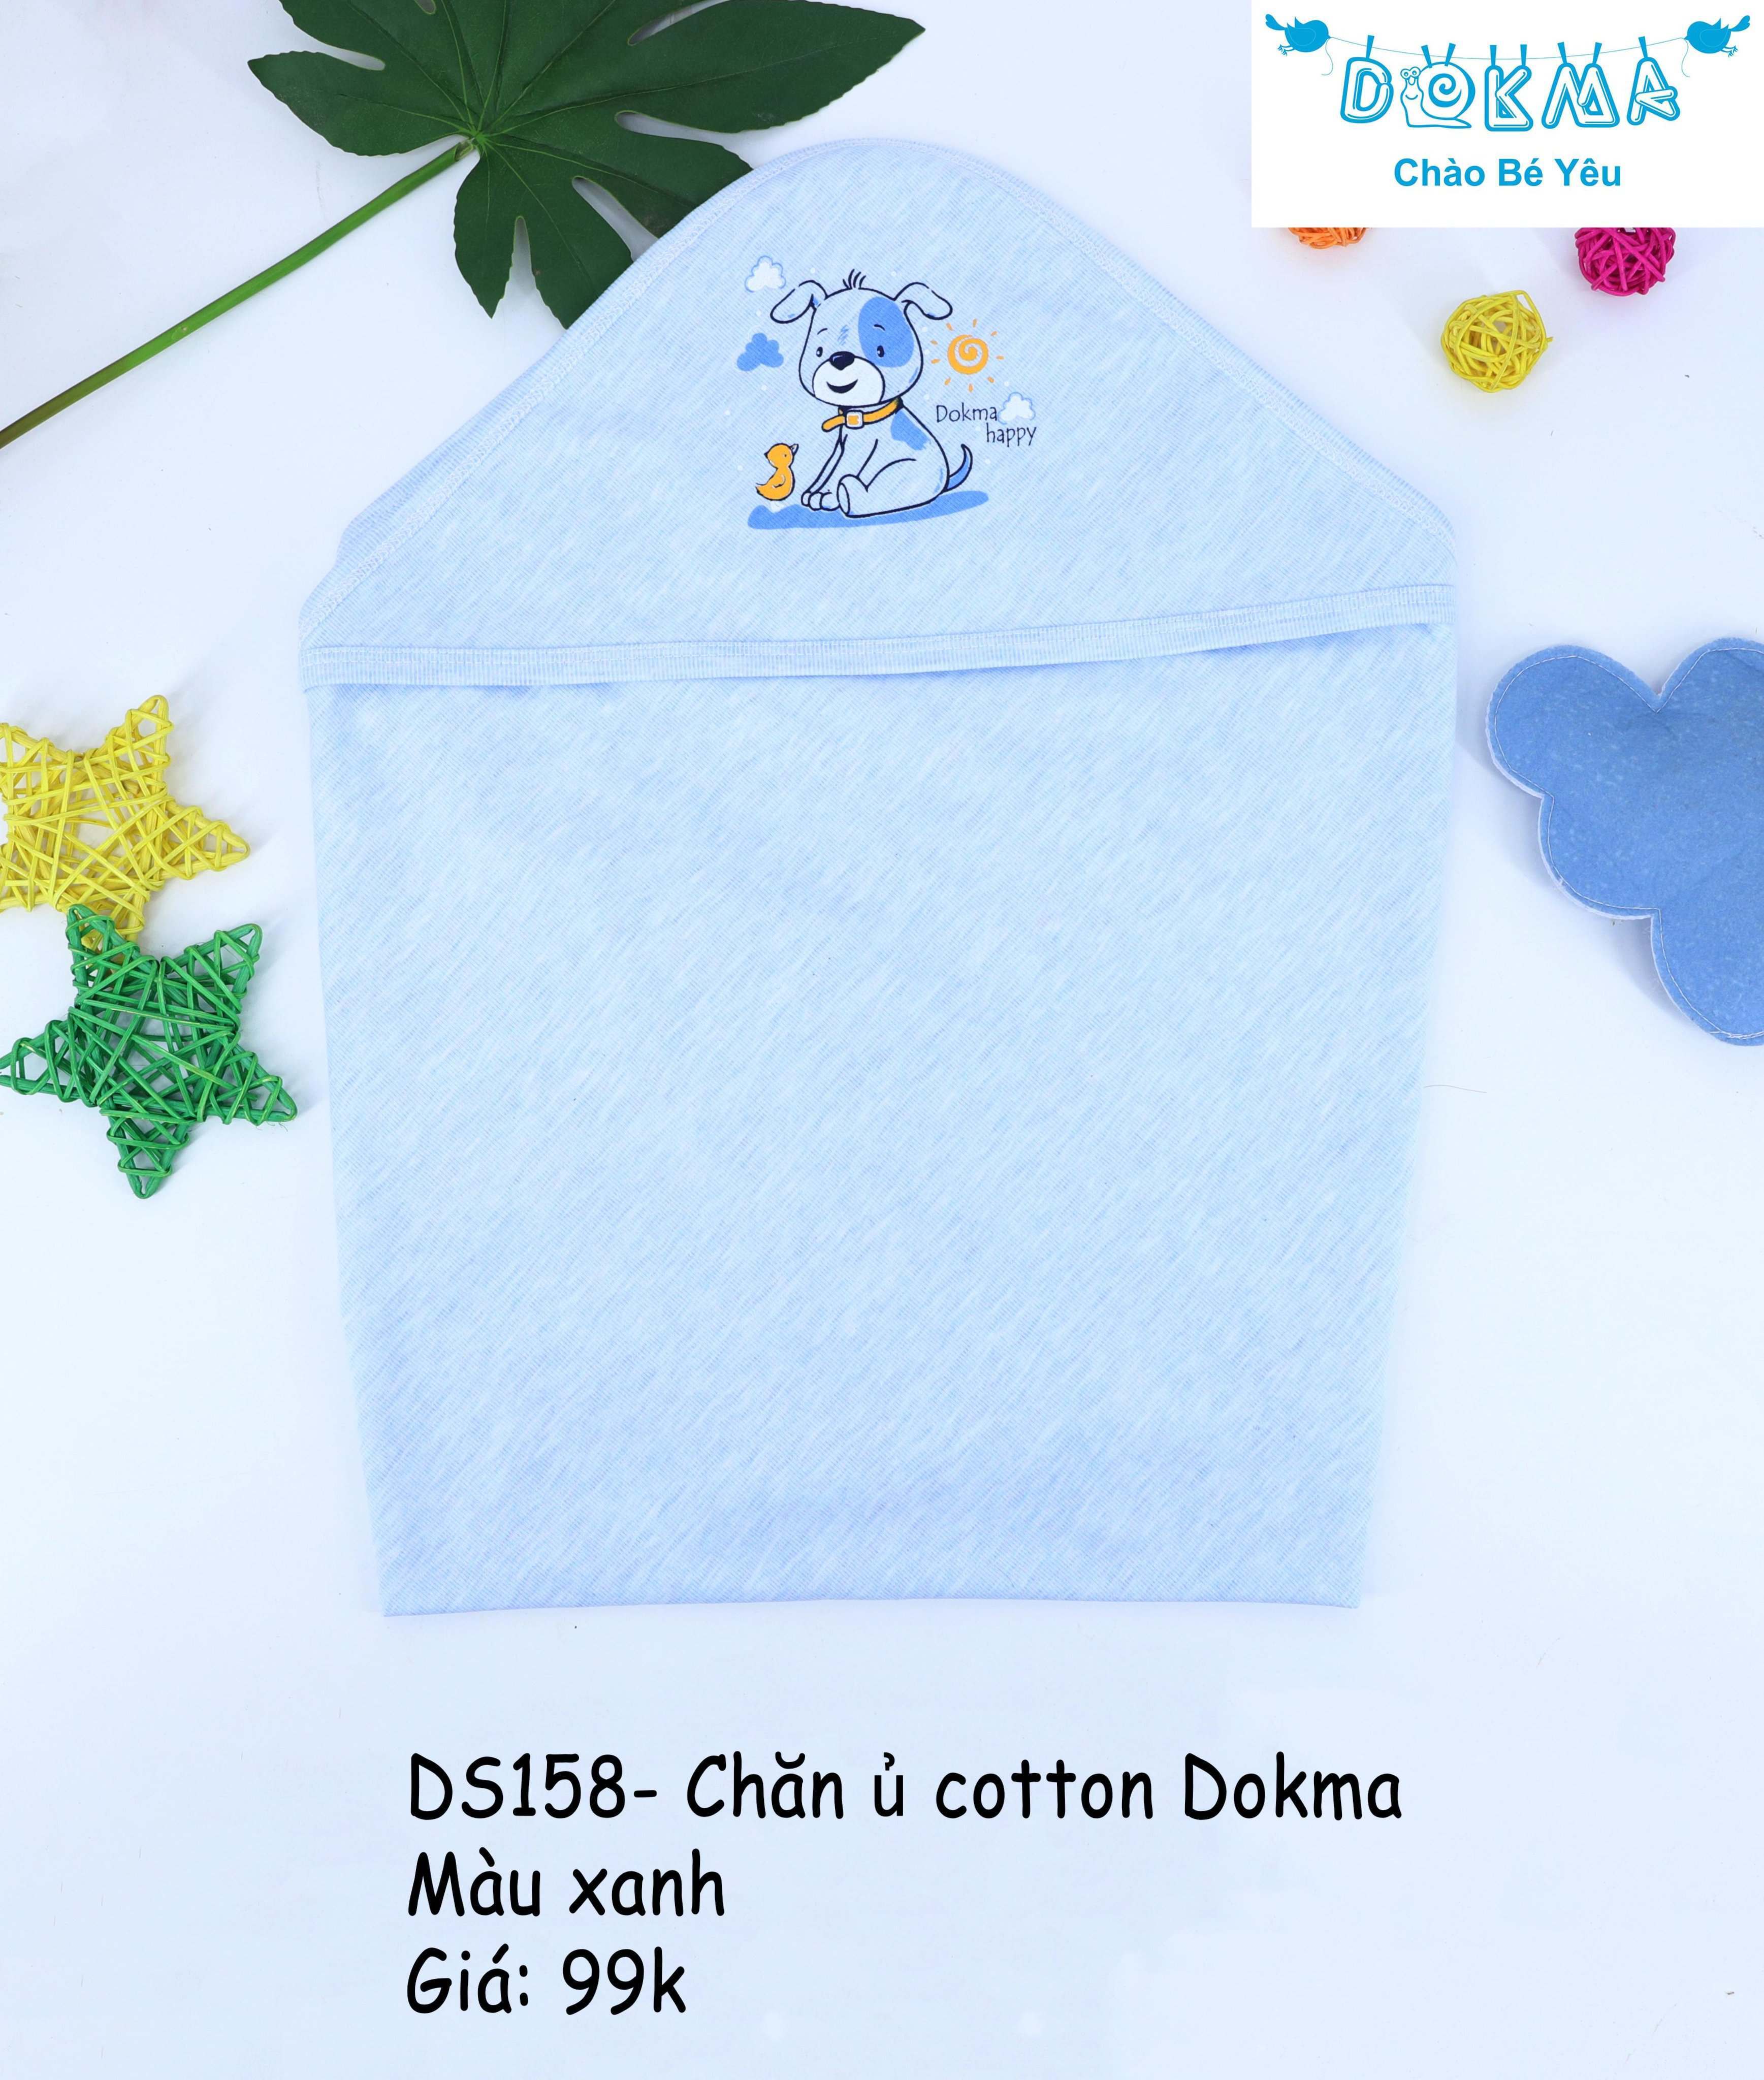 Chăn ủ cotton Dokma DS158